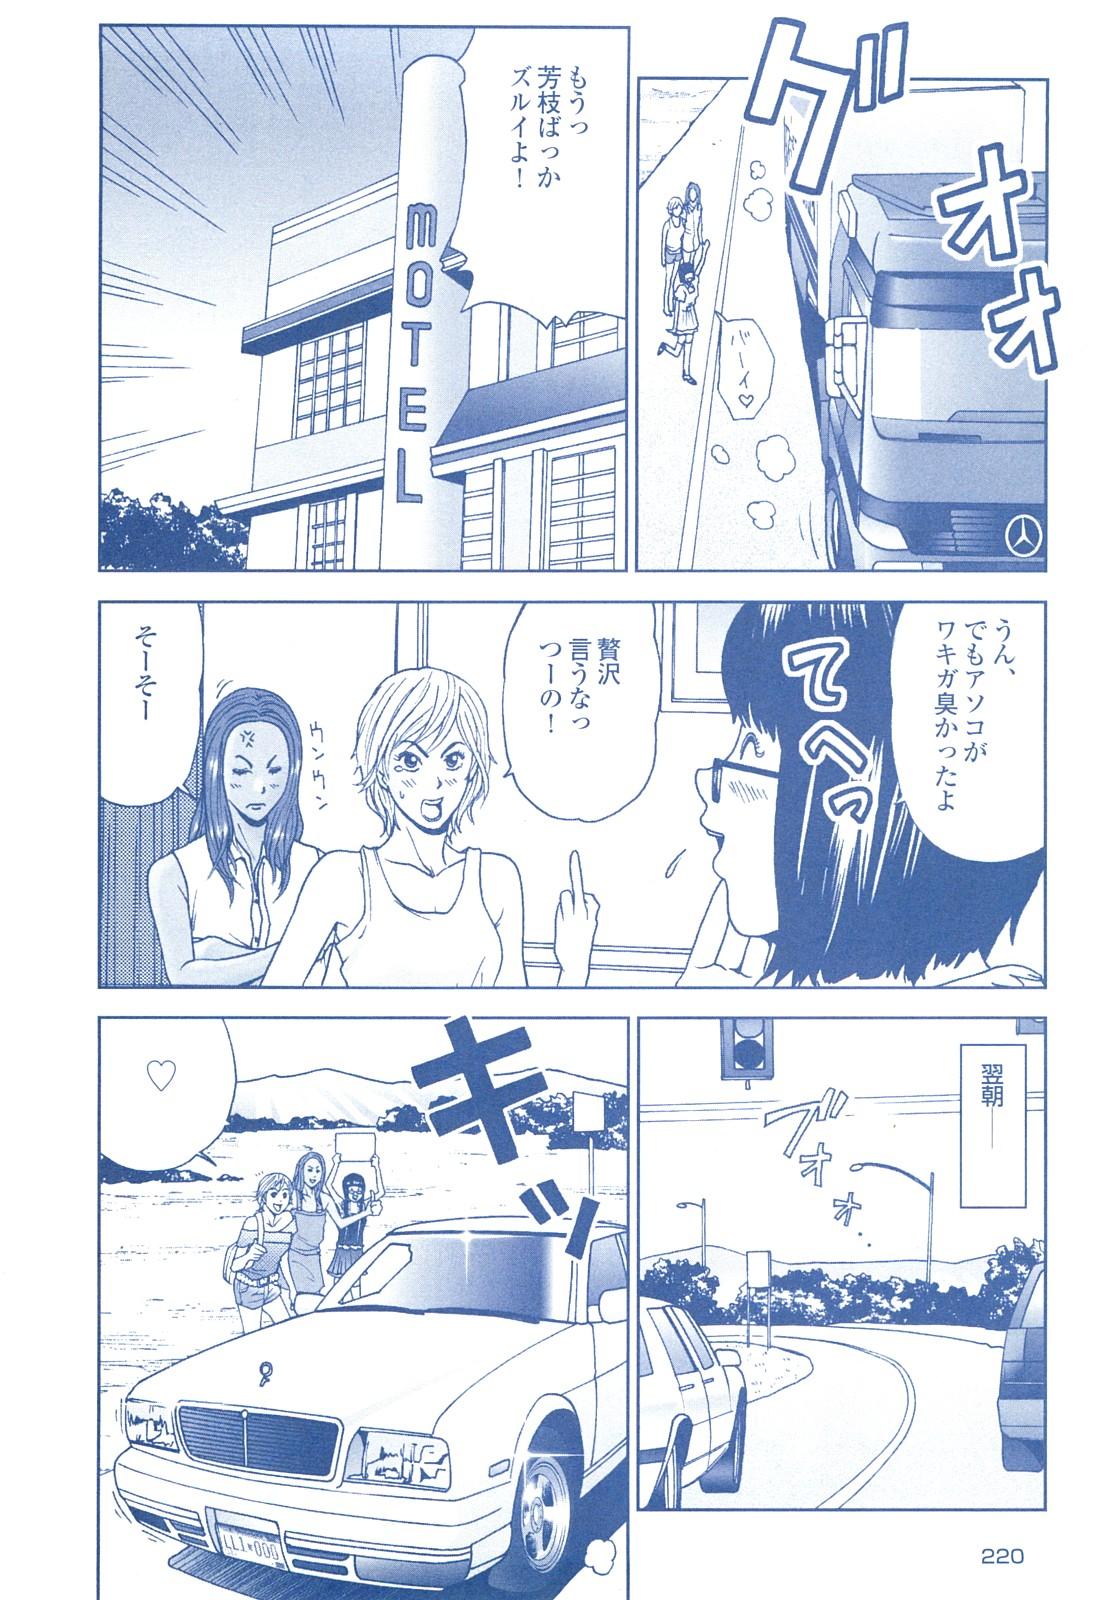 コミック裏モノJAPAN Vol.18 今井のりたつスペシャル号 219